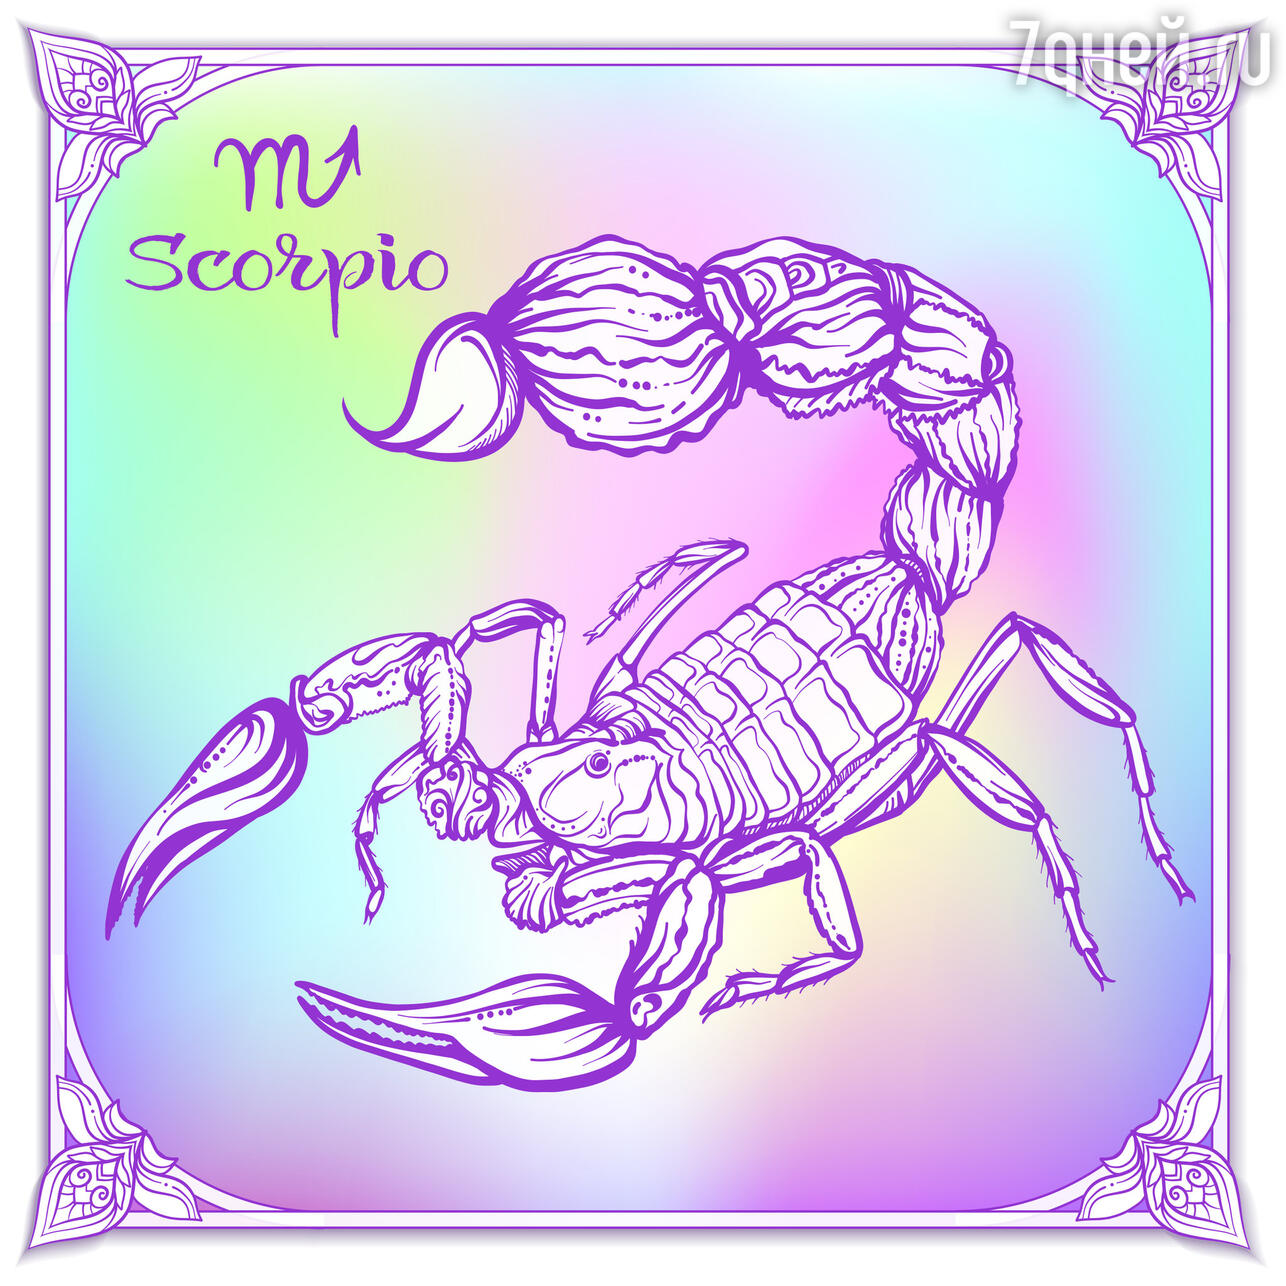 Совместимость Скорпиона со всеми знаками зодиака